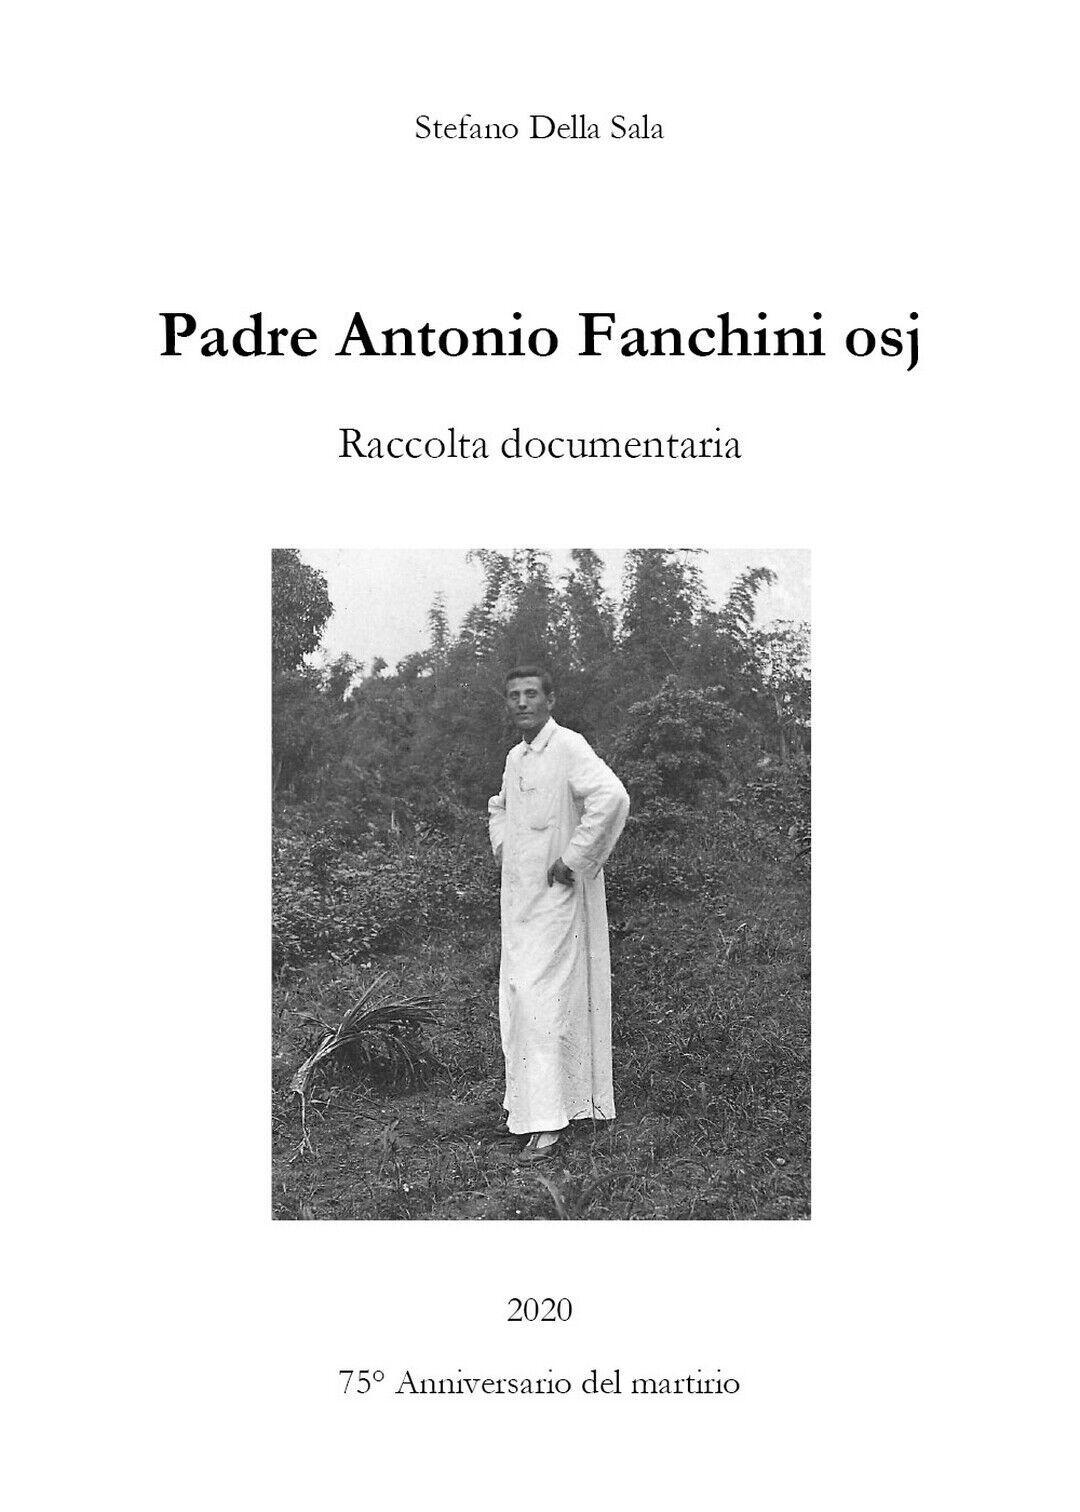 Padre Antonio Fanchini osj. Raccolta documentaria  di Stefano Della Sala,  2020